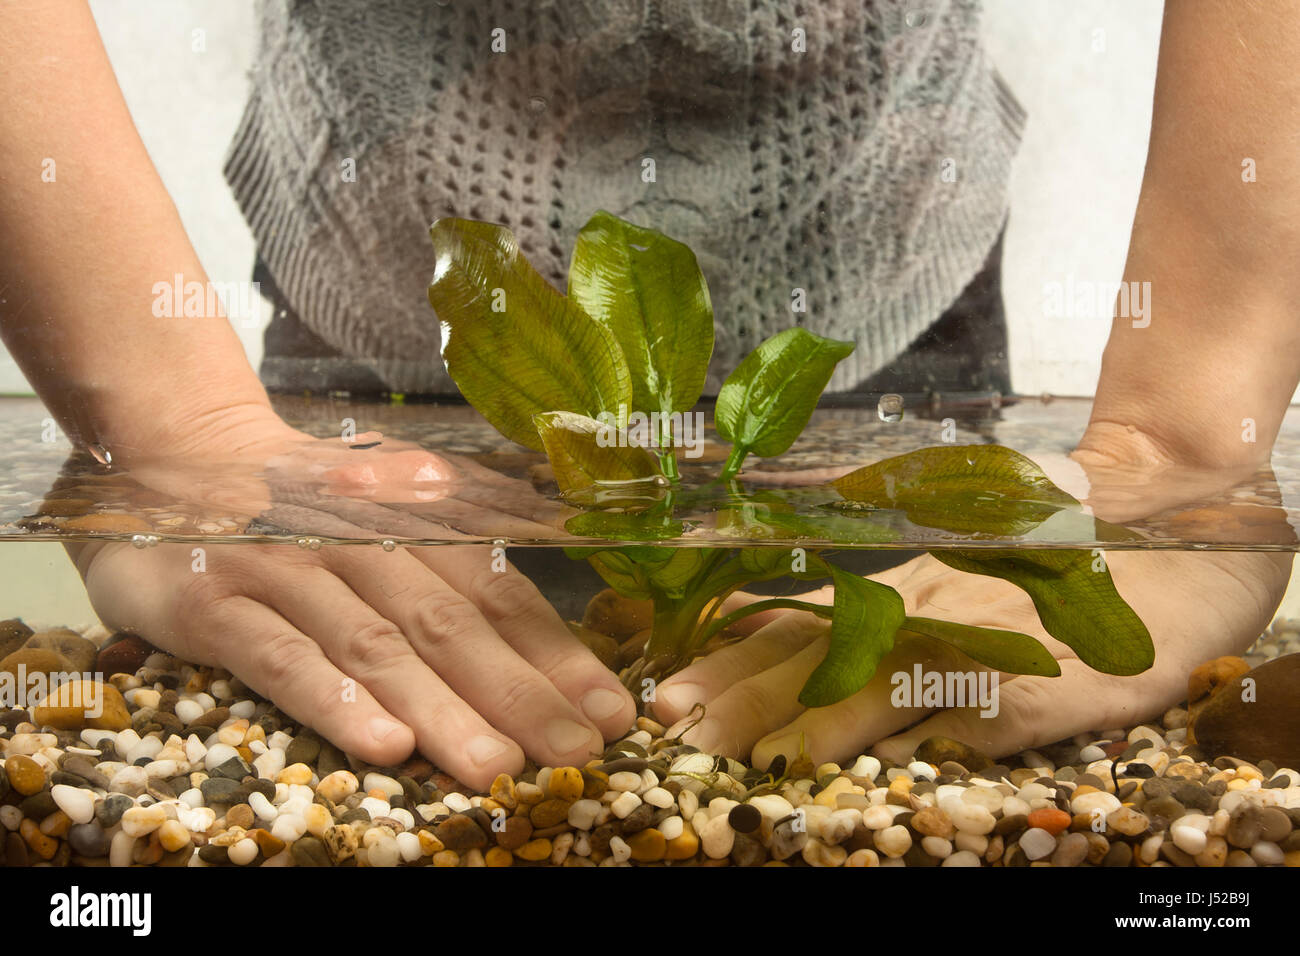 hands of aquarian planting echinodorus in aquarium Stock Photo